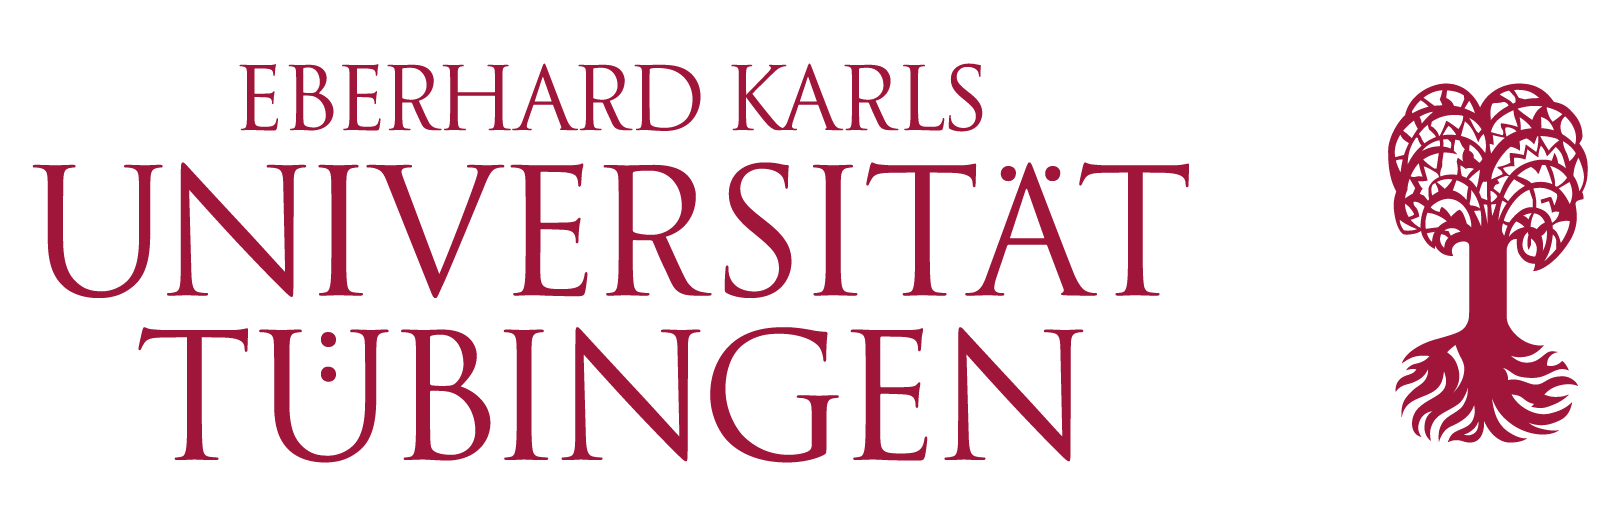 The Eberhard Karls University of Tübingen